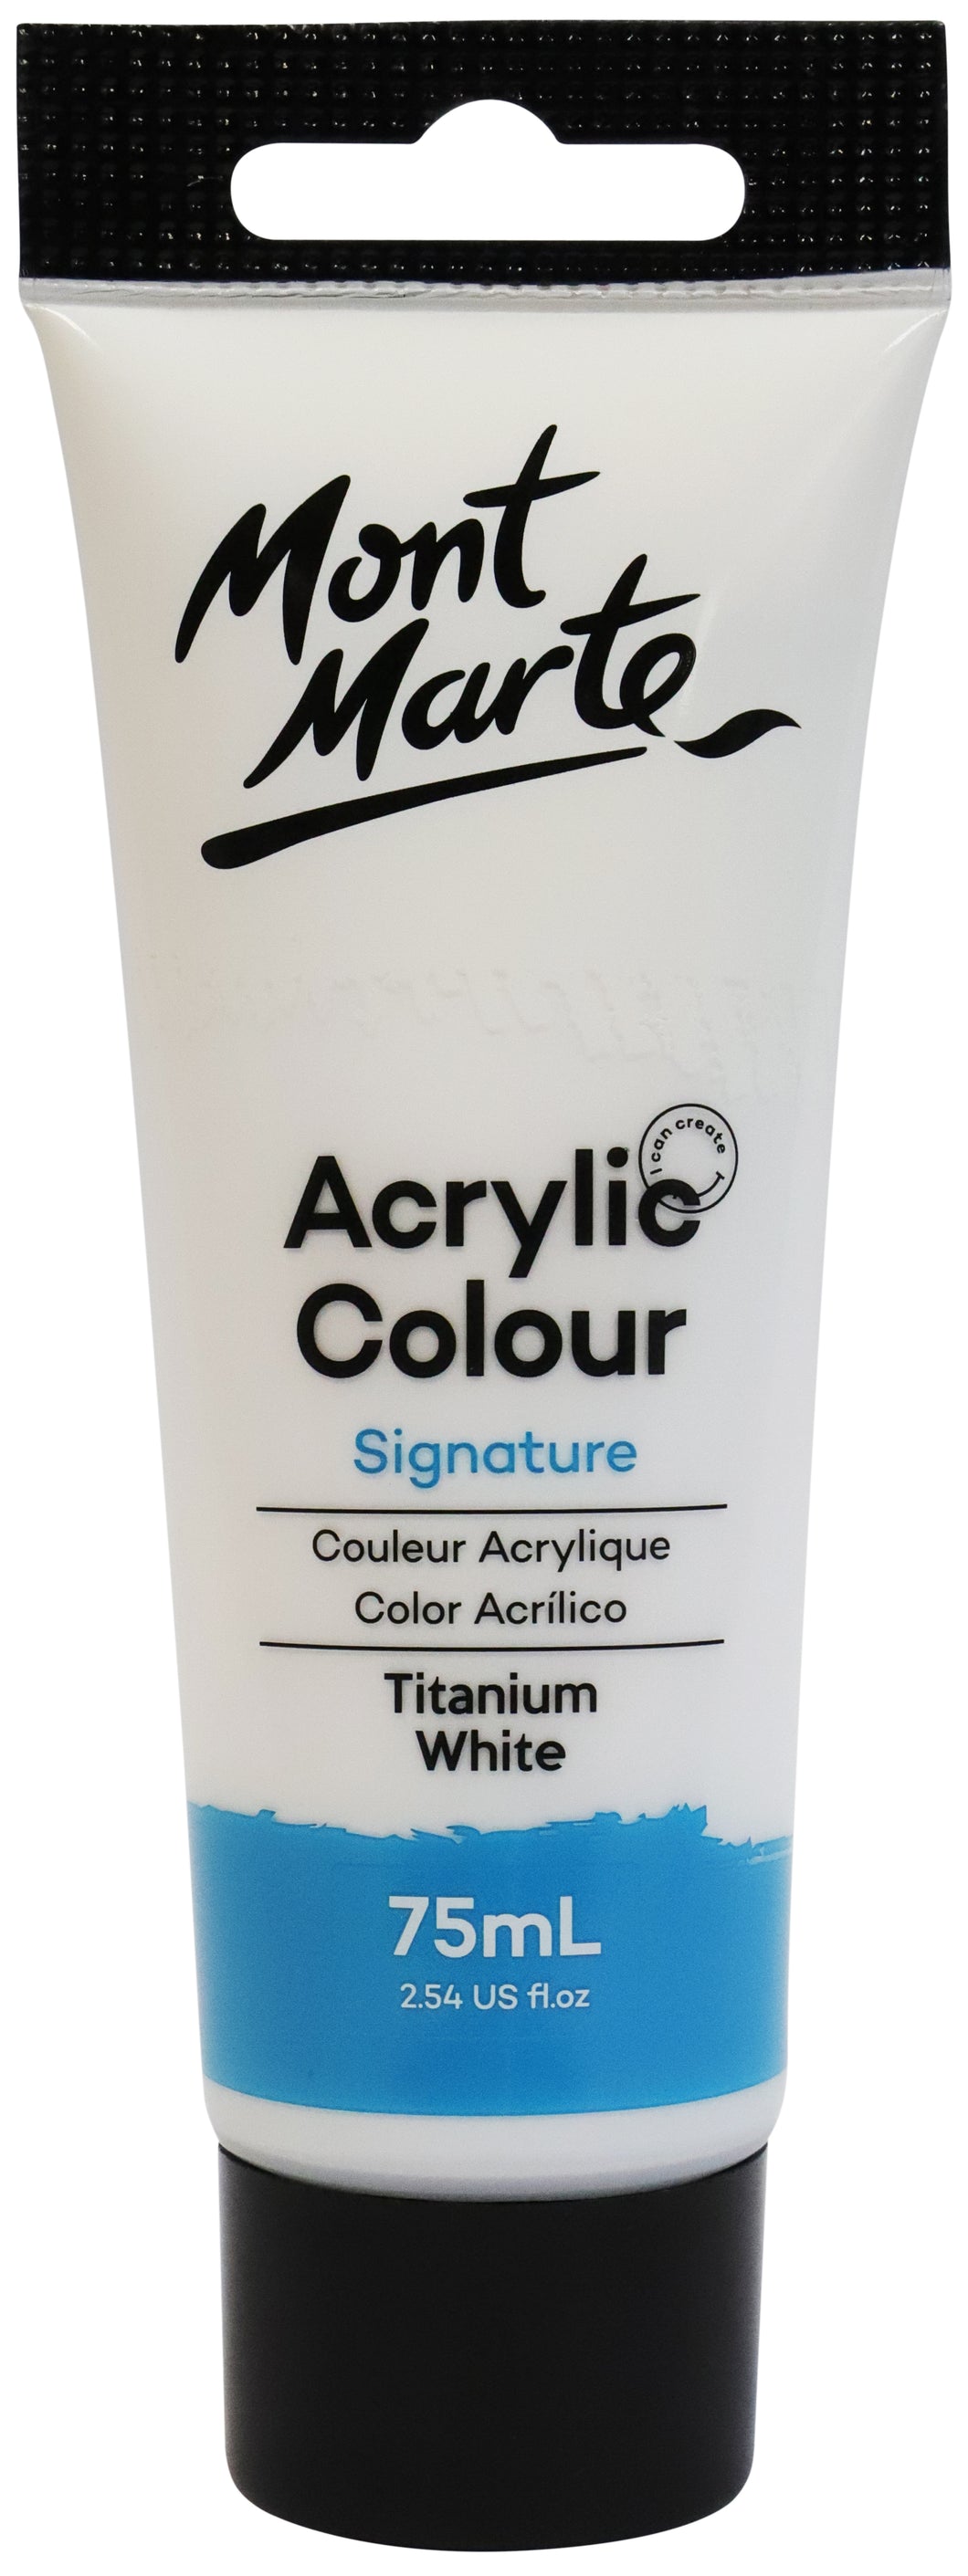 MM Acrylic Colour Paint 75ml - Titanium White